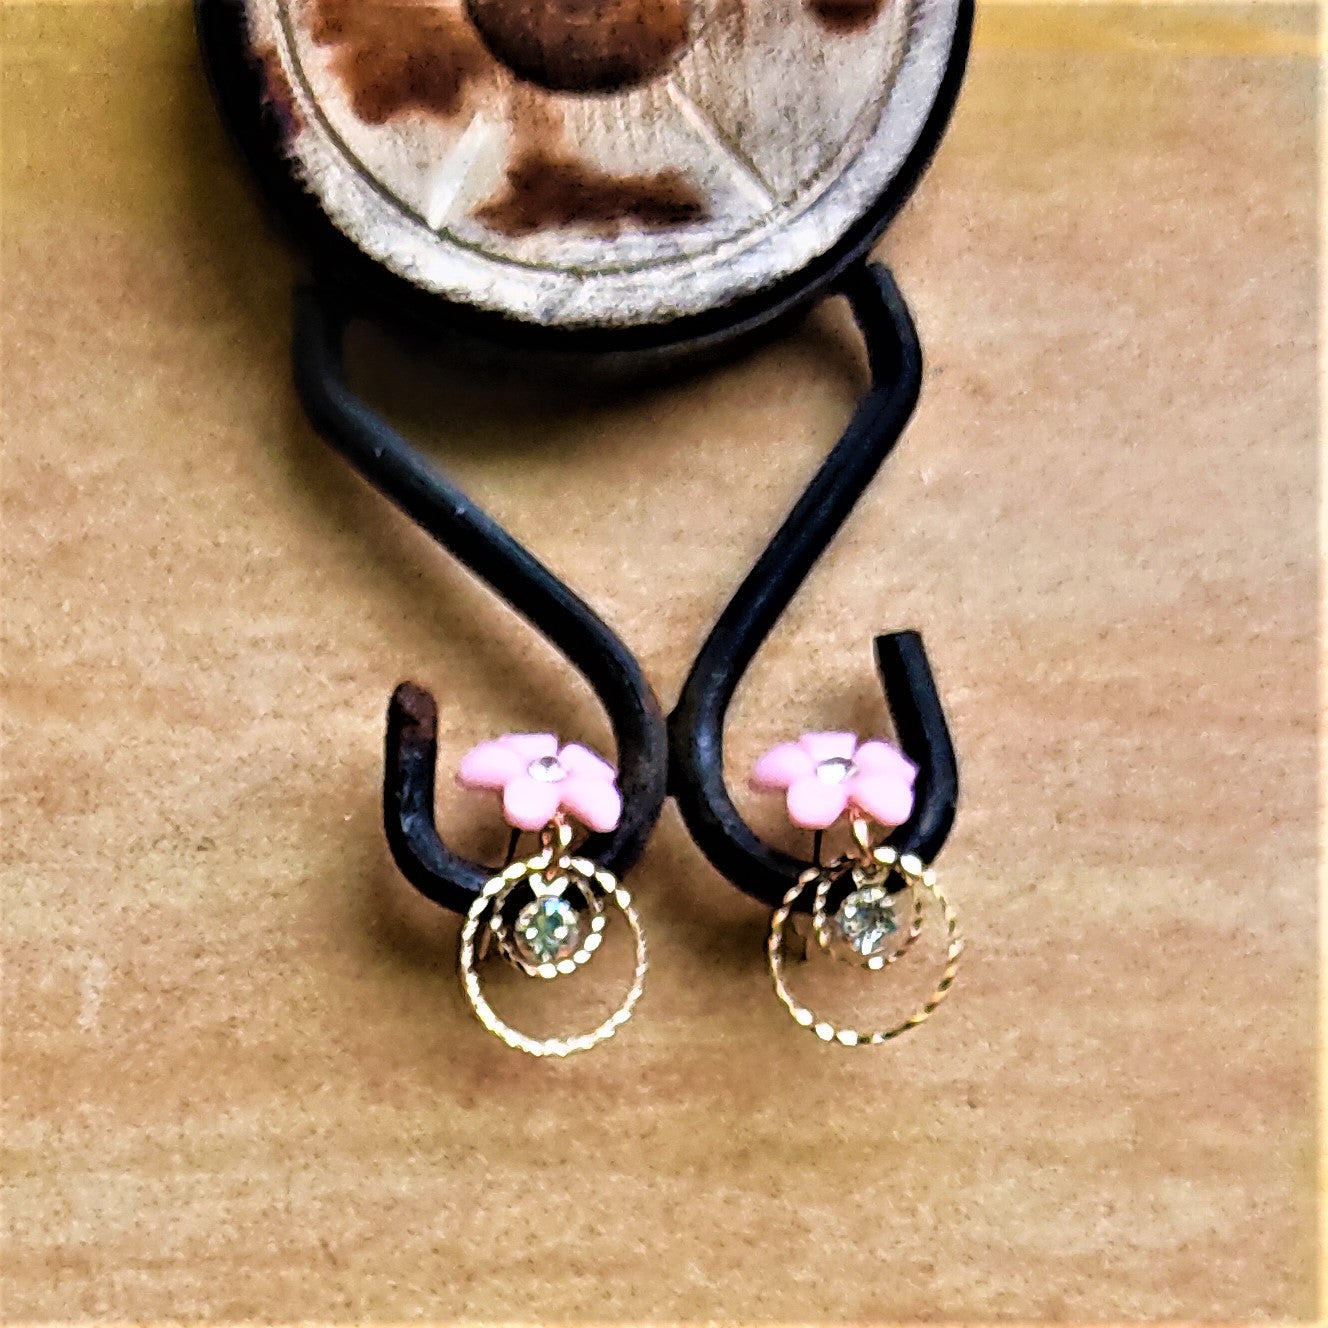 Small Flower Earrings Pink Jewelry Ear Rings Earrings Agtukart